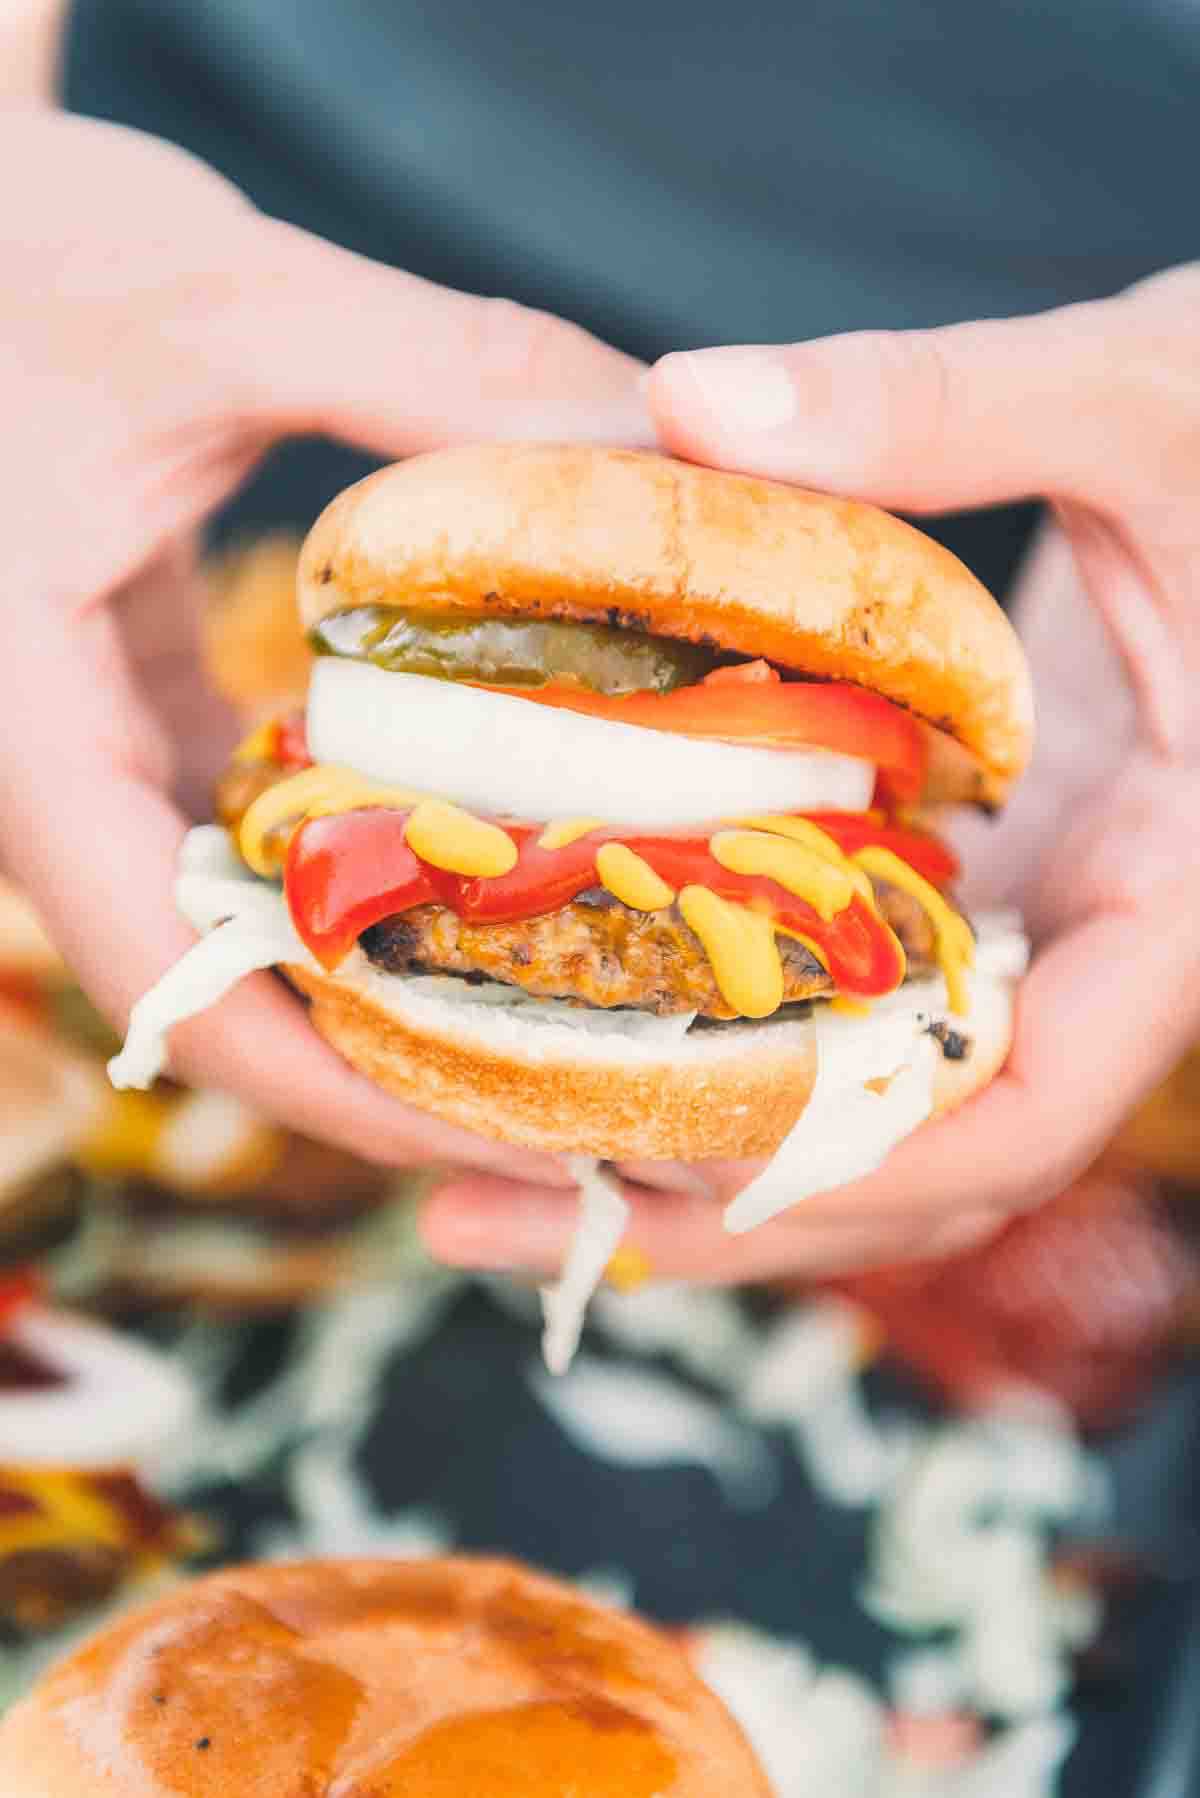 Hands holding a burger. 